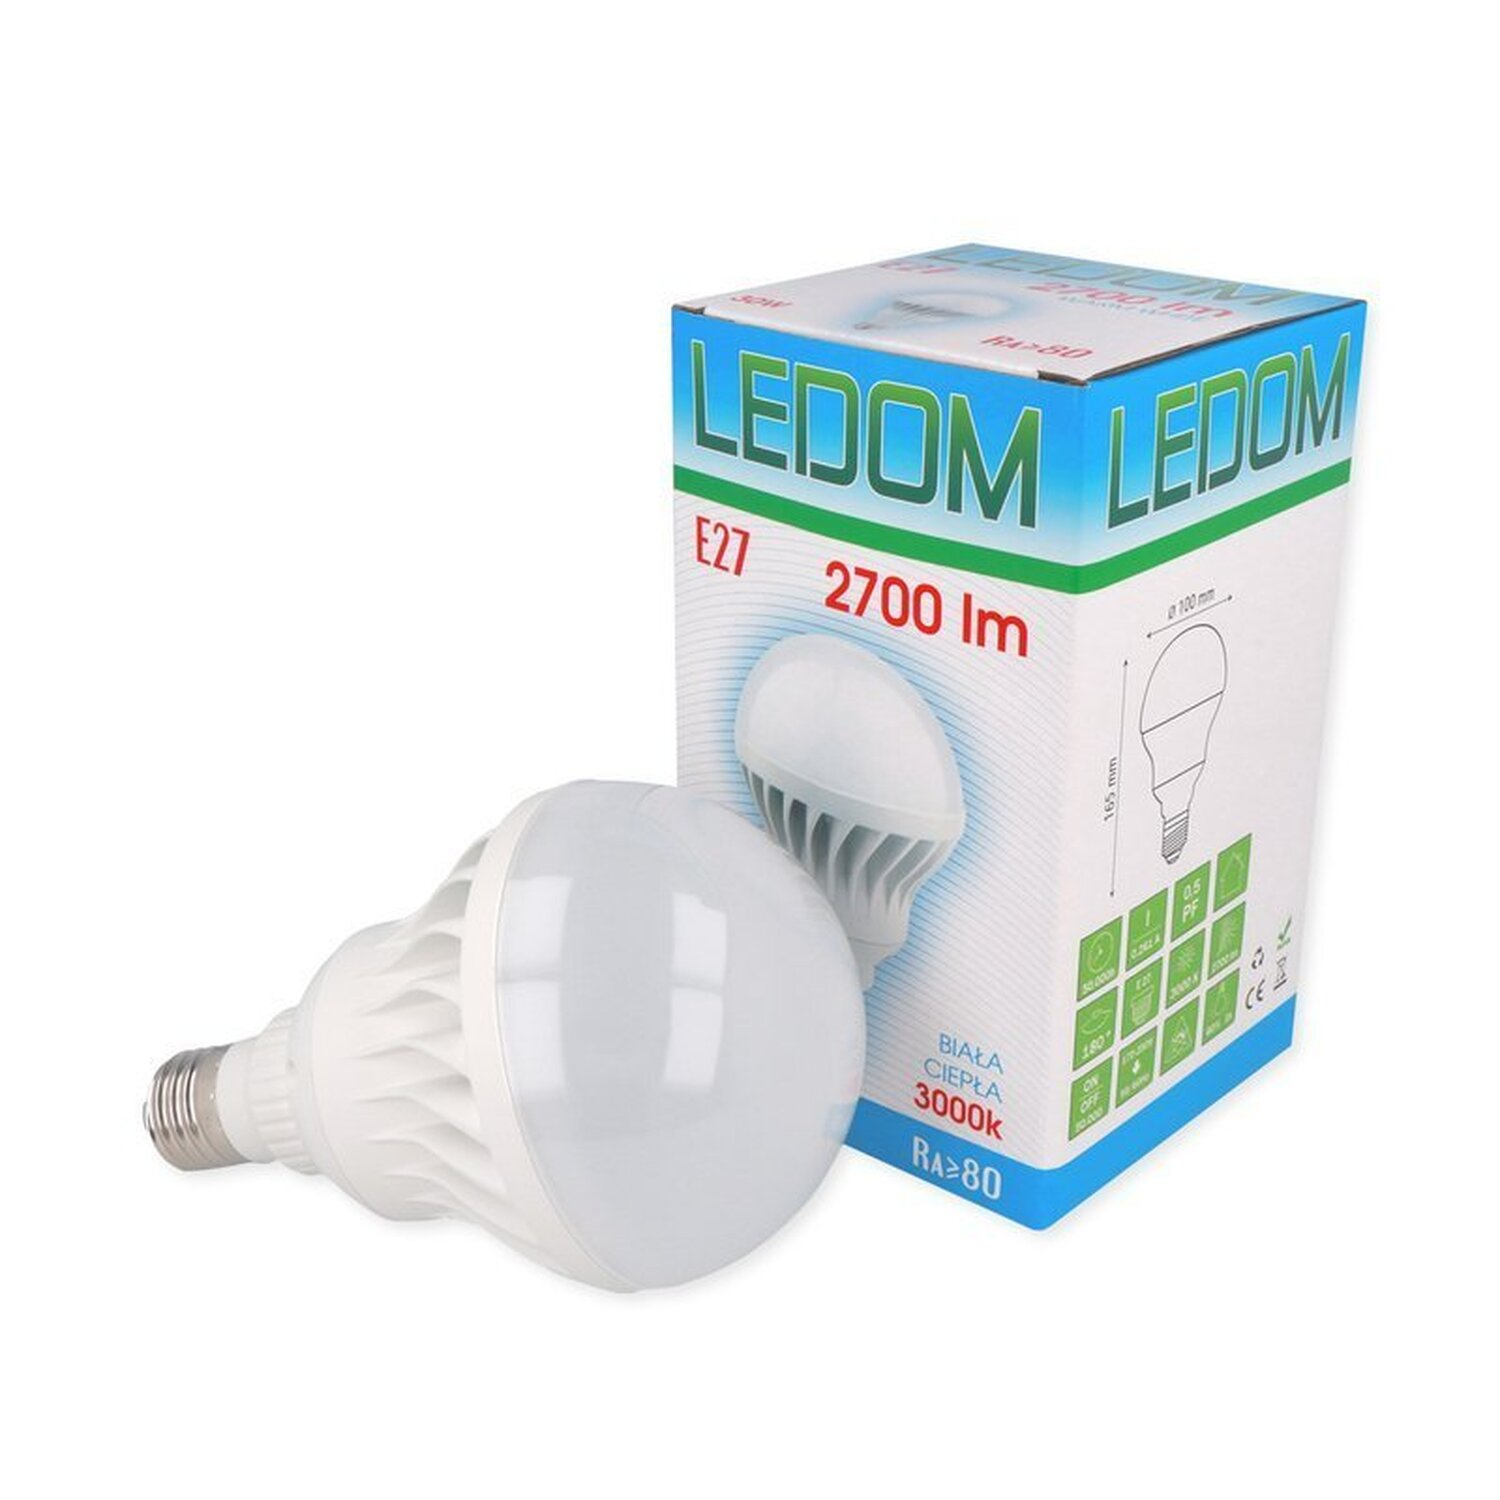 LED LINE Warmweiß 2700 30W LED Leuchtmittel E27 LED Ceramic lm